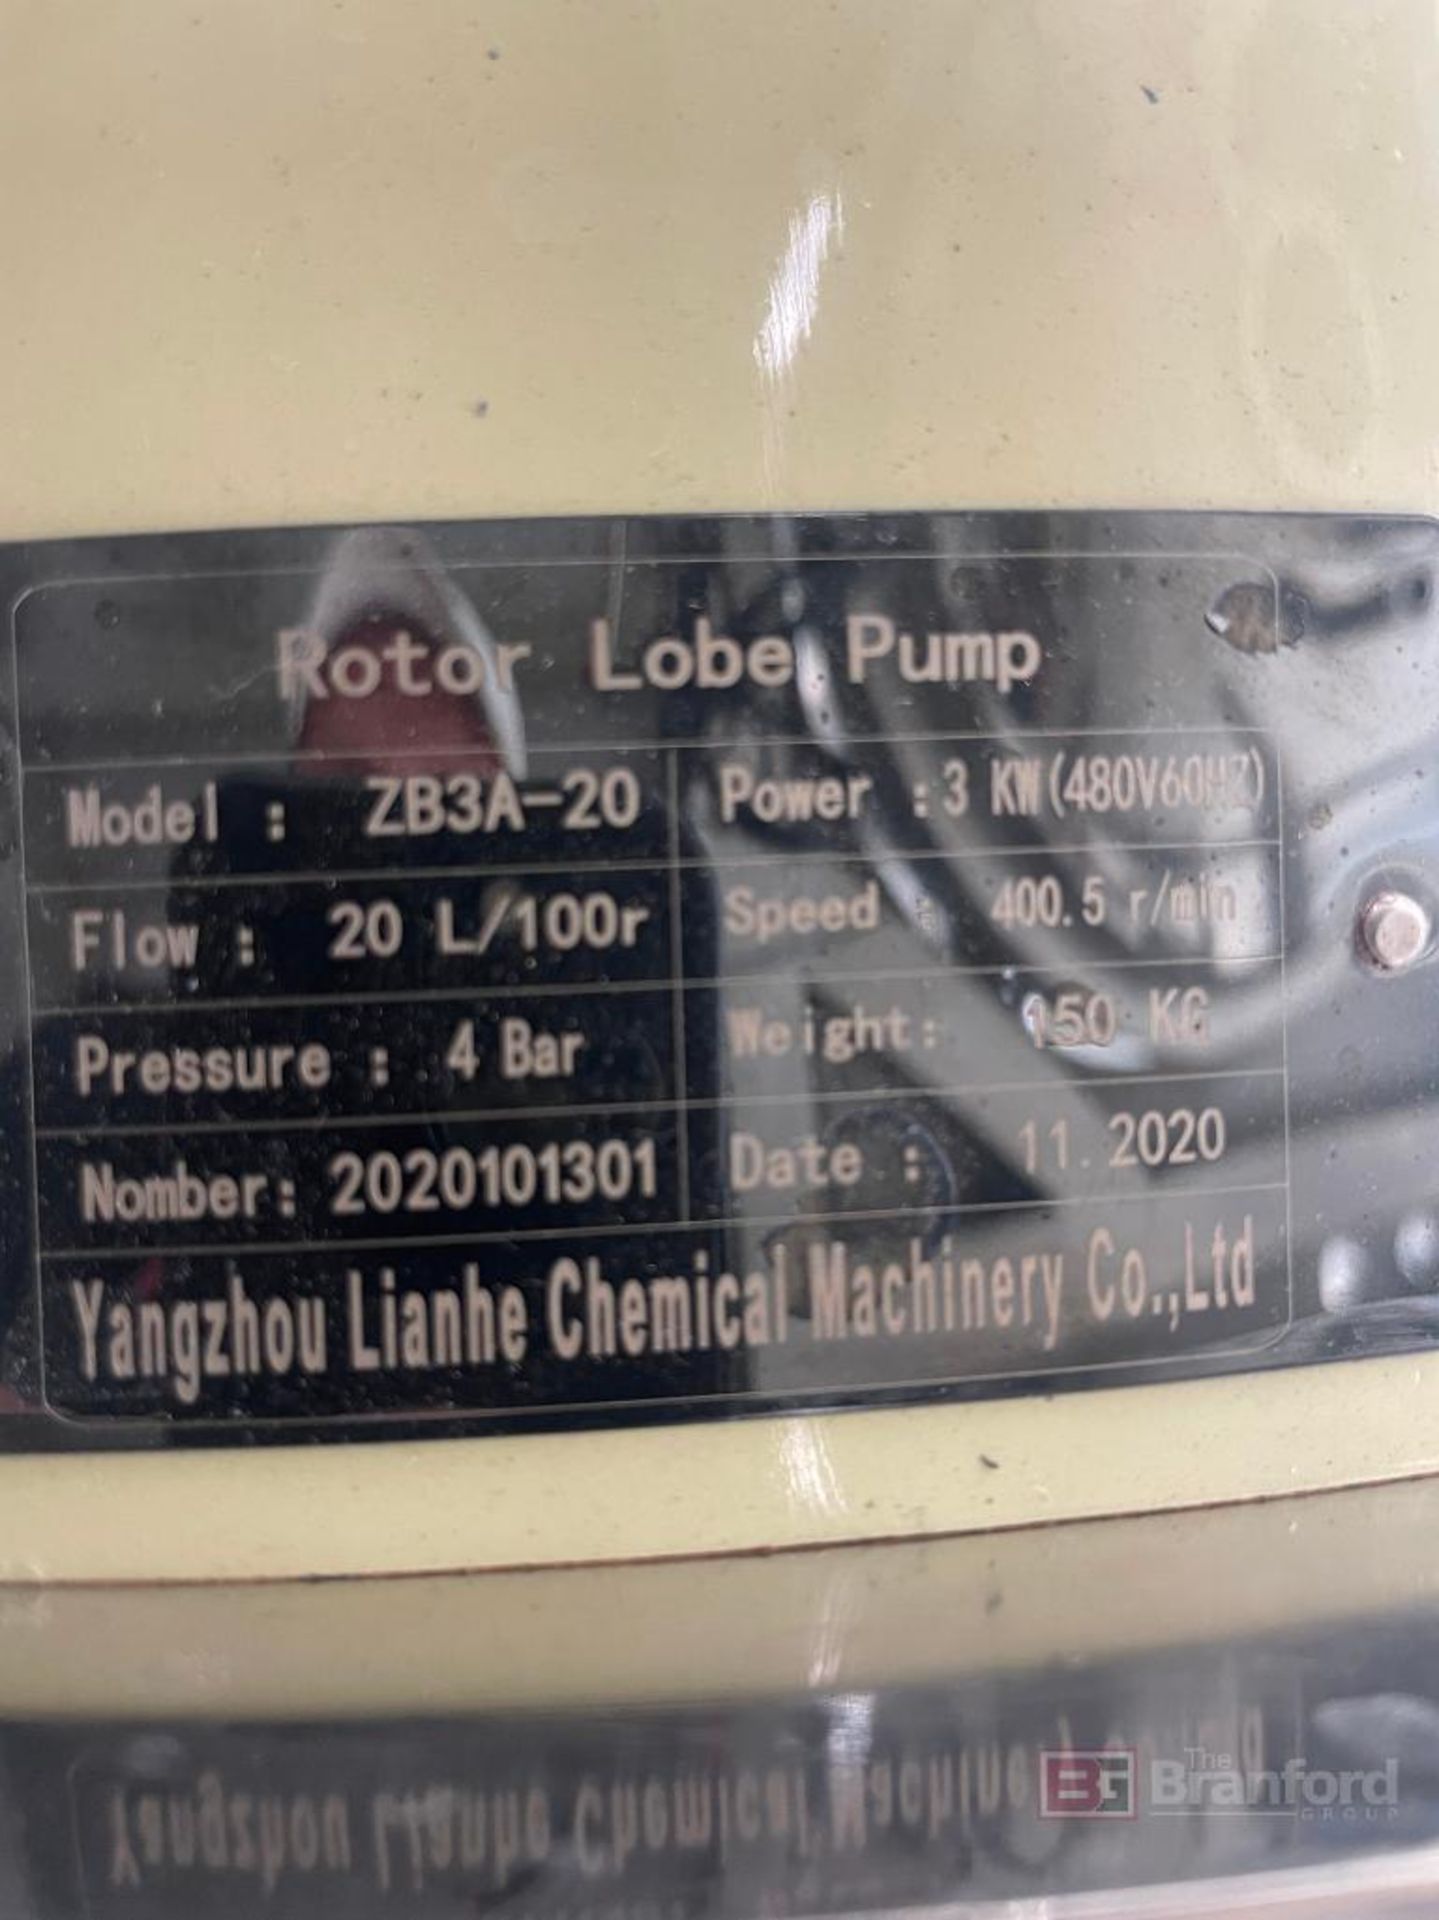 Yangzhou Lianhe Chemical Machinery Co. Rotary Lobe Pump - Image 3 of 3